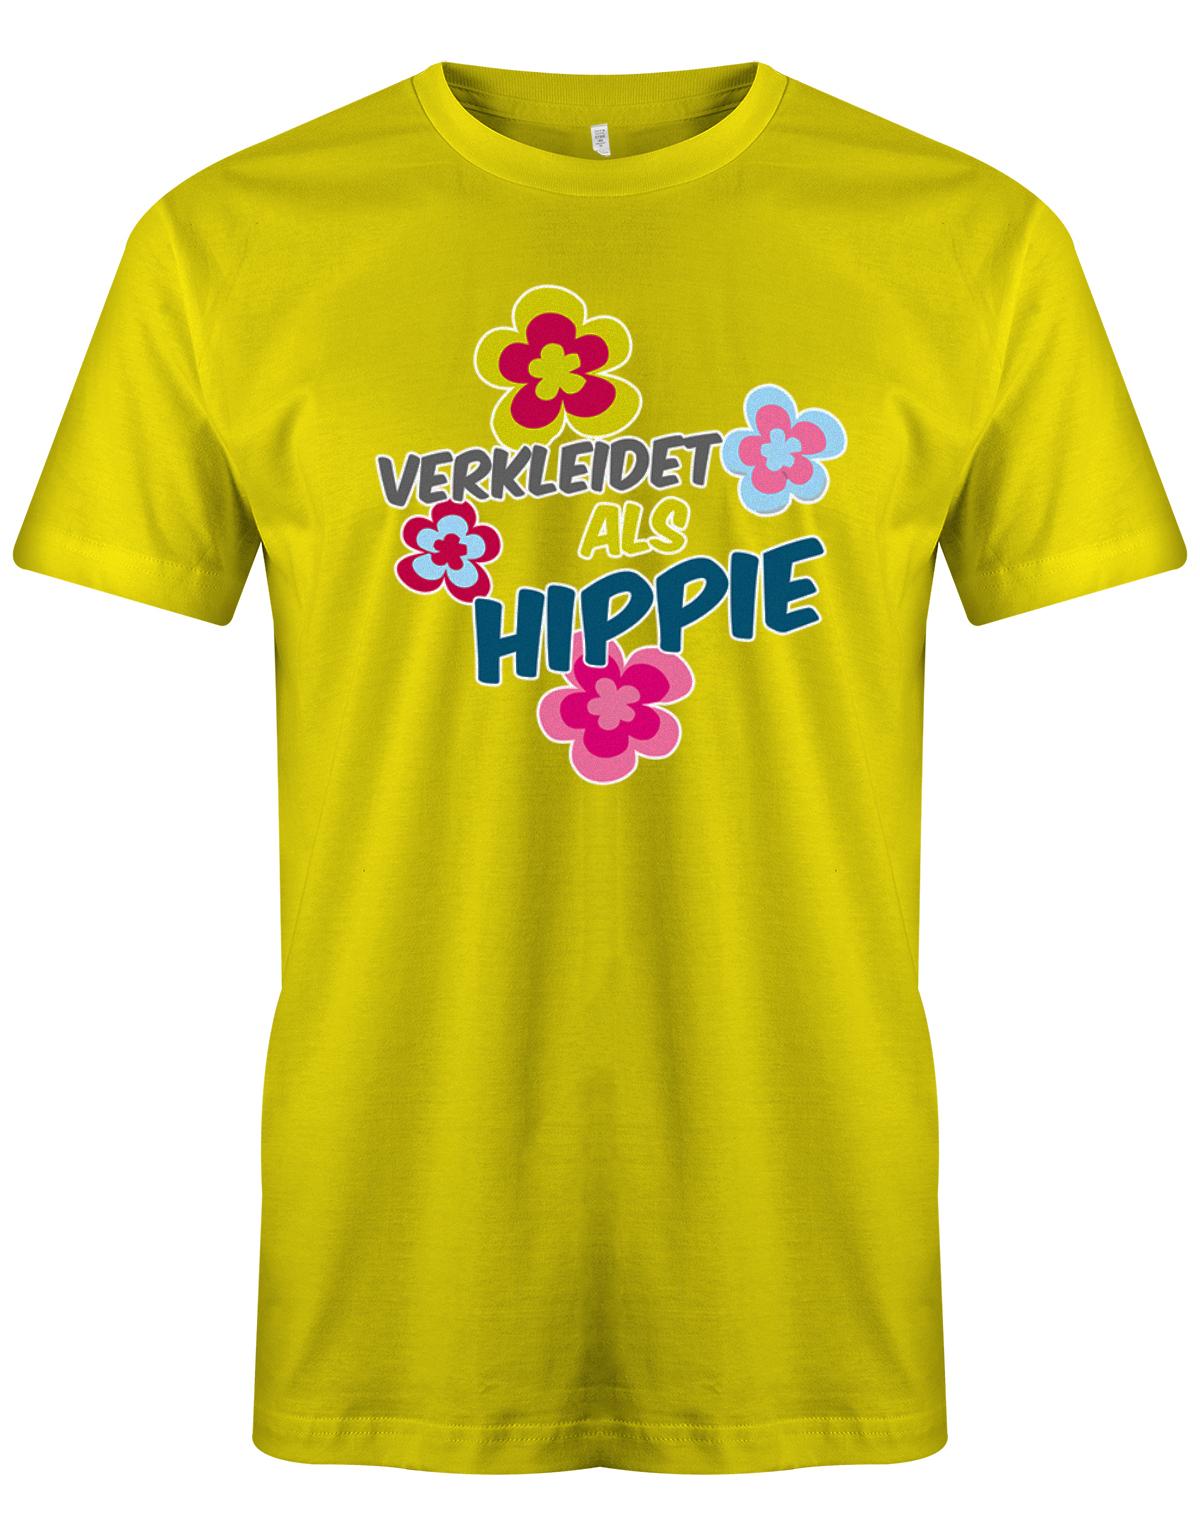 Verkleidet-als-Hippi-Karneval-Fasching-Kost-m-Ersatz-Shirt-Herren-Gelb